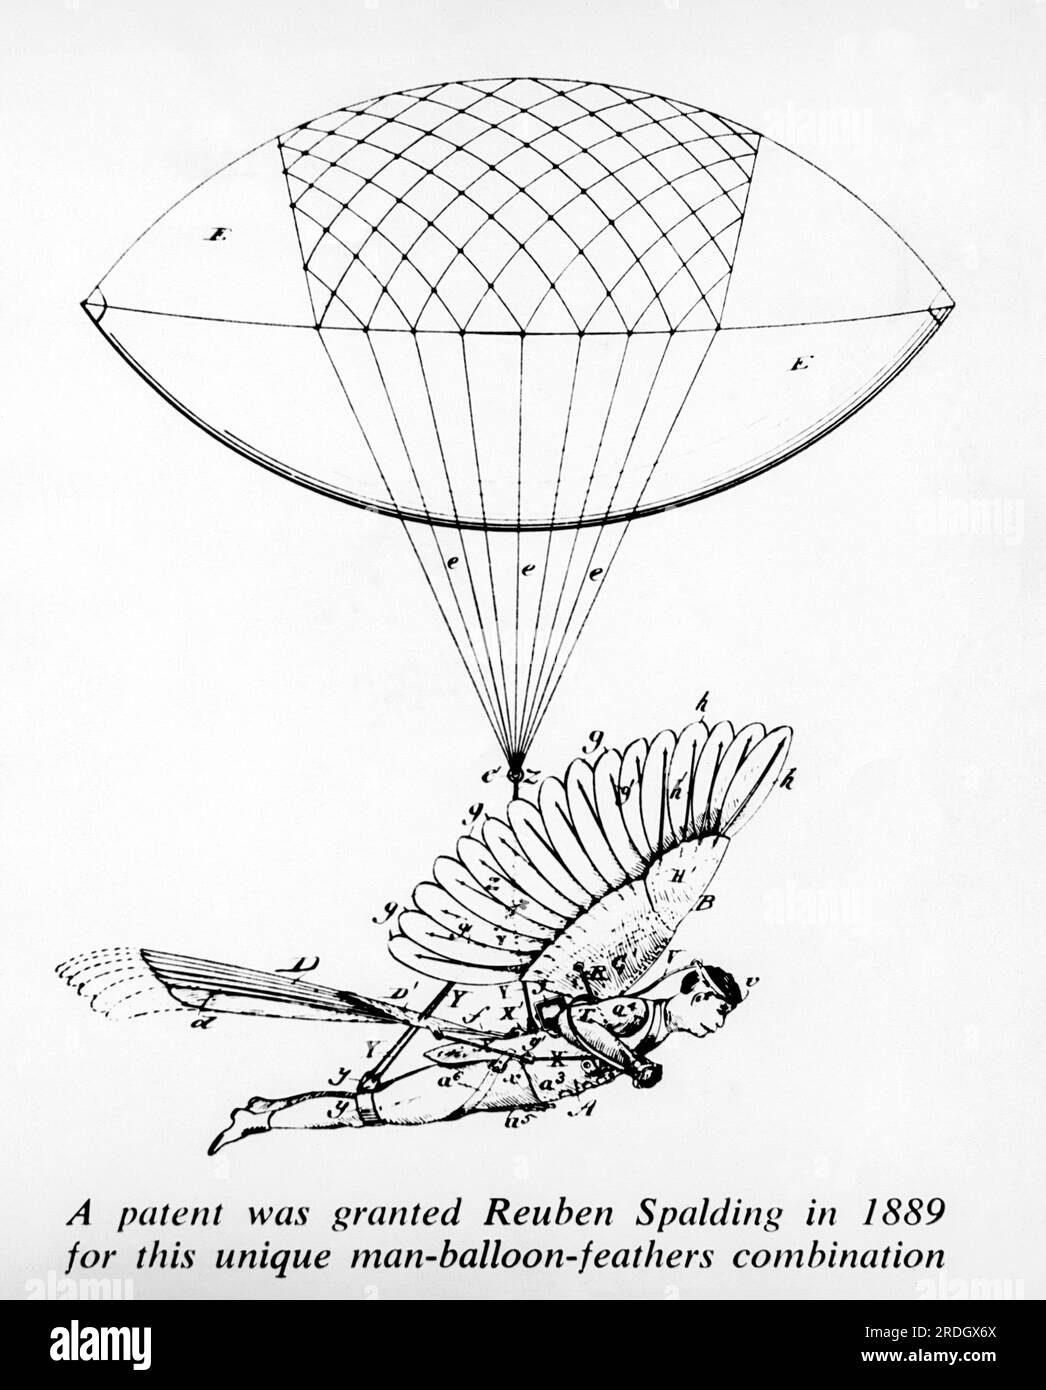 Vereinigte Staaten: 1889 Reuben Spaulding wurde ein Patent für diese einzigartige Kombination aus Mensch und Ballon und Federn erteilt. Stockfoto